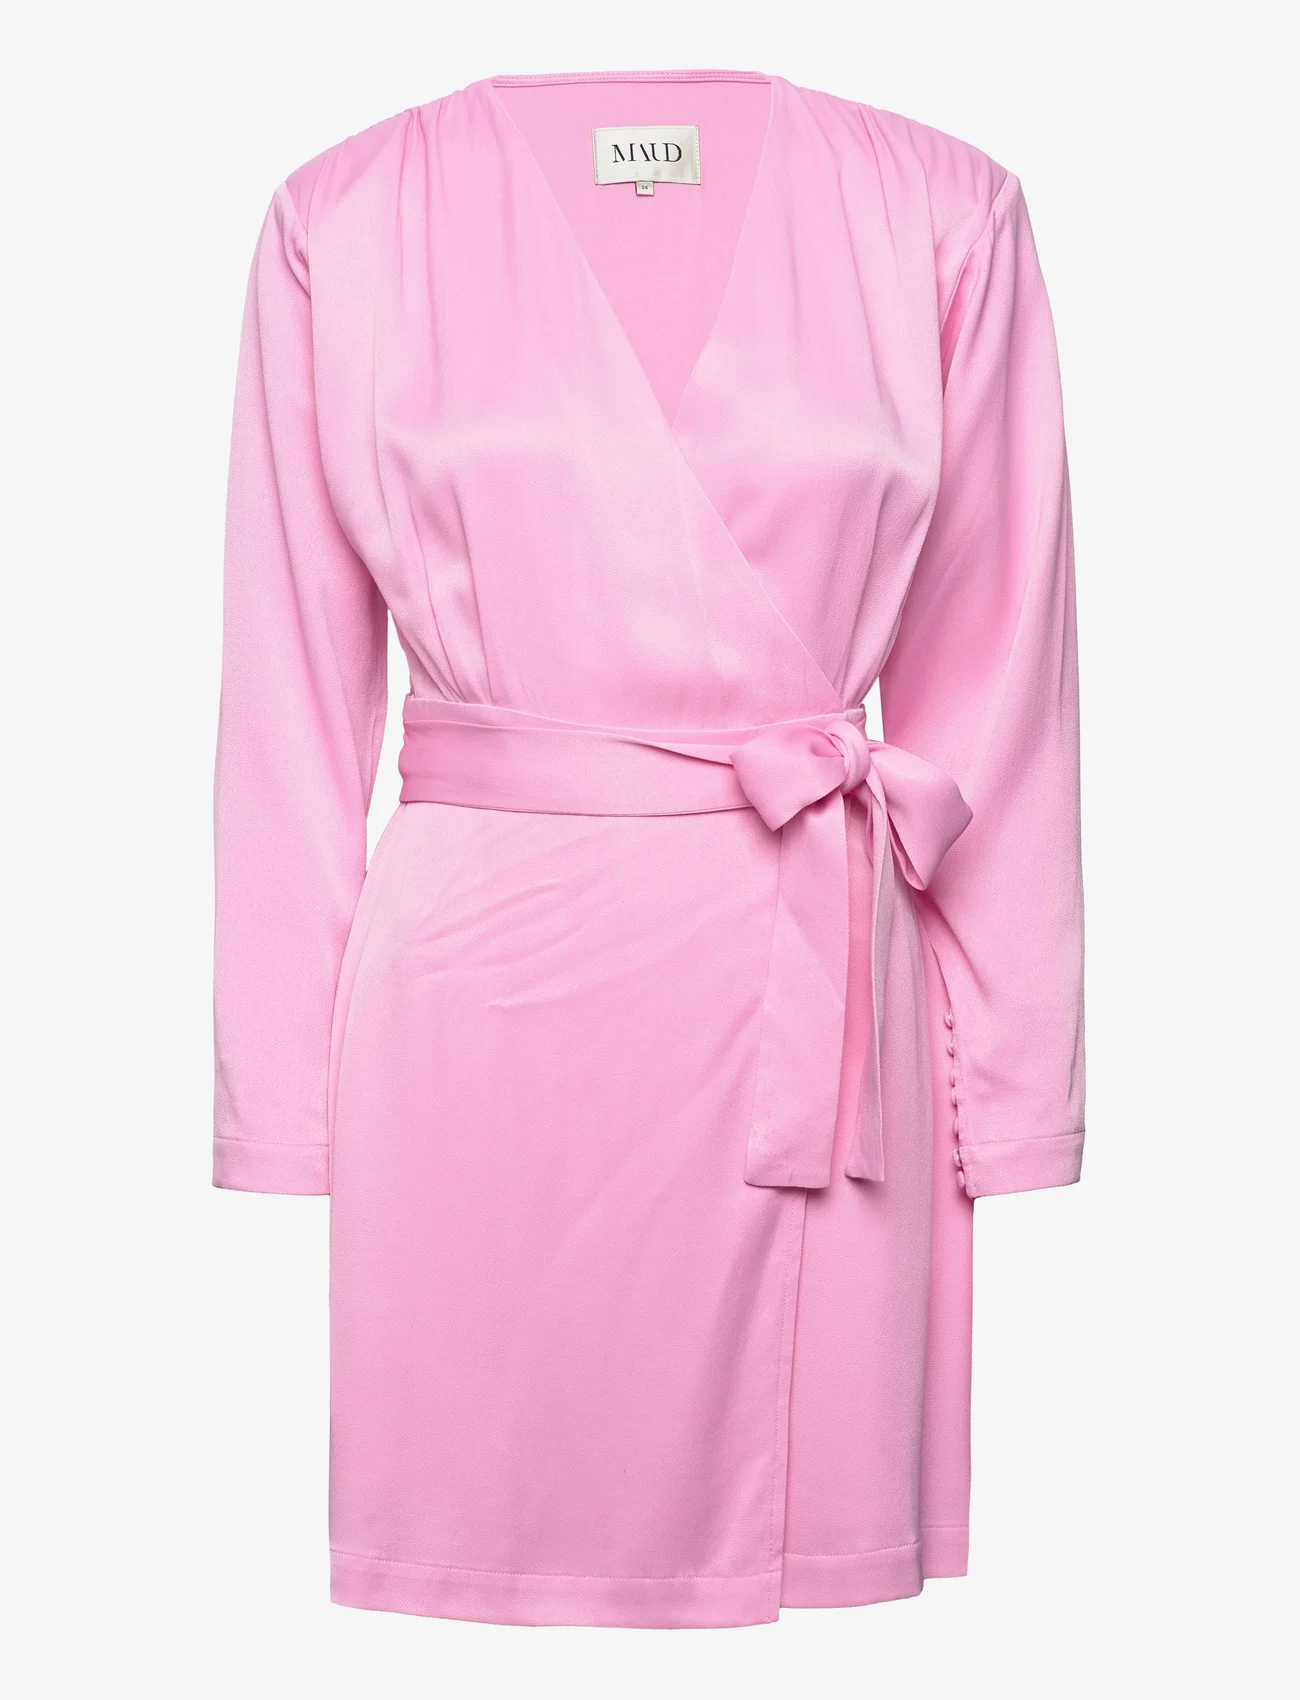 MAUD - Sanna Dress - odzież imprezowa w cenach outletowych - pink - 0